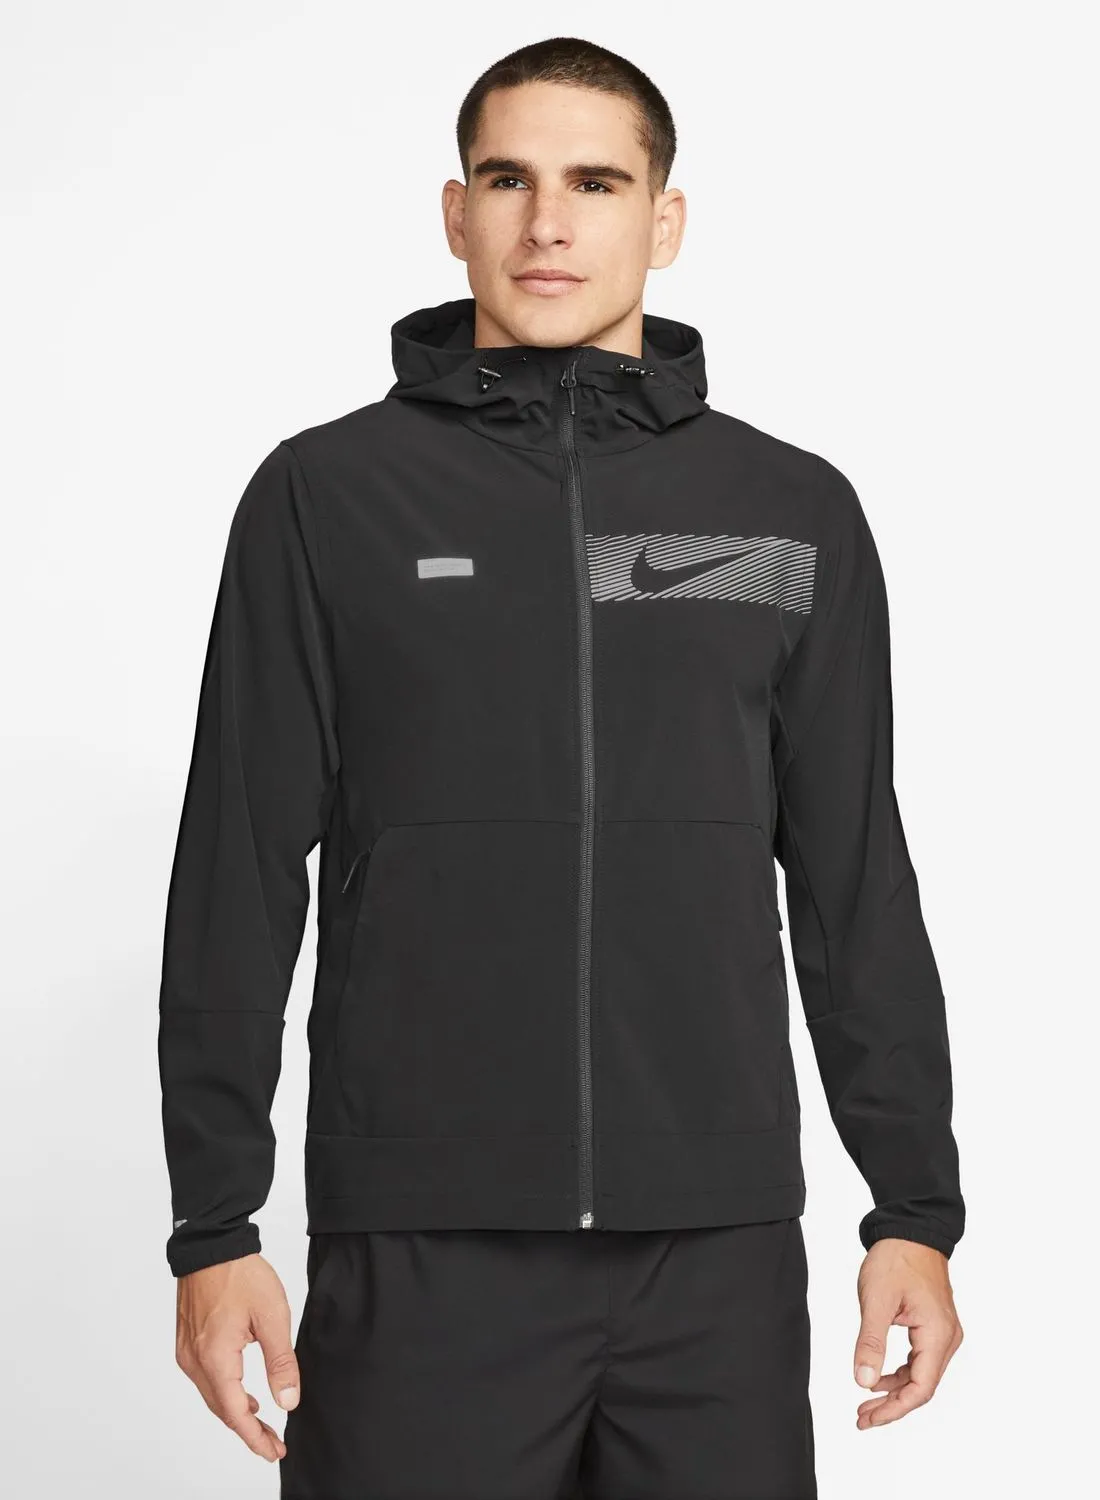 Nike Flash Unlimited Jacket